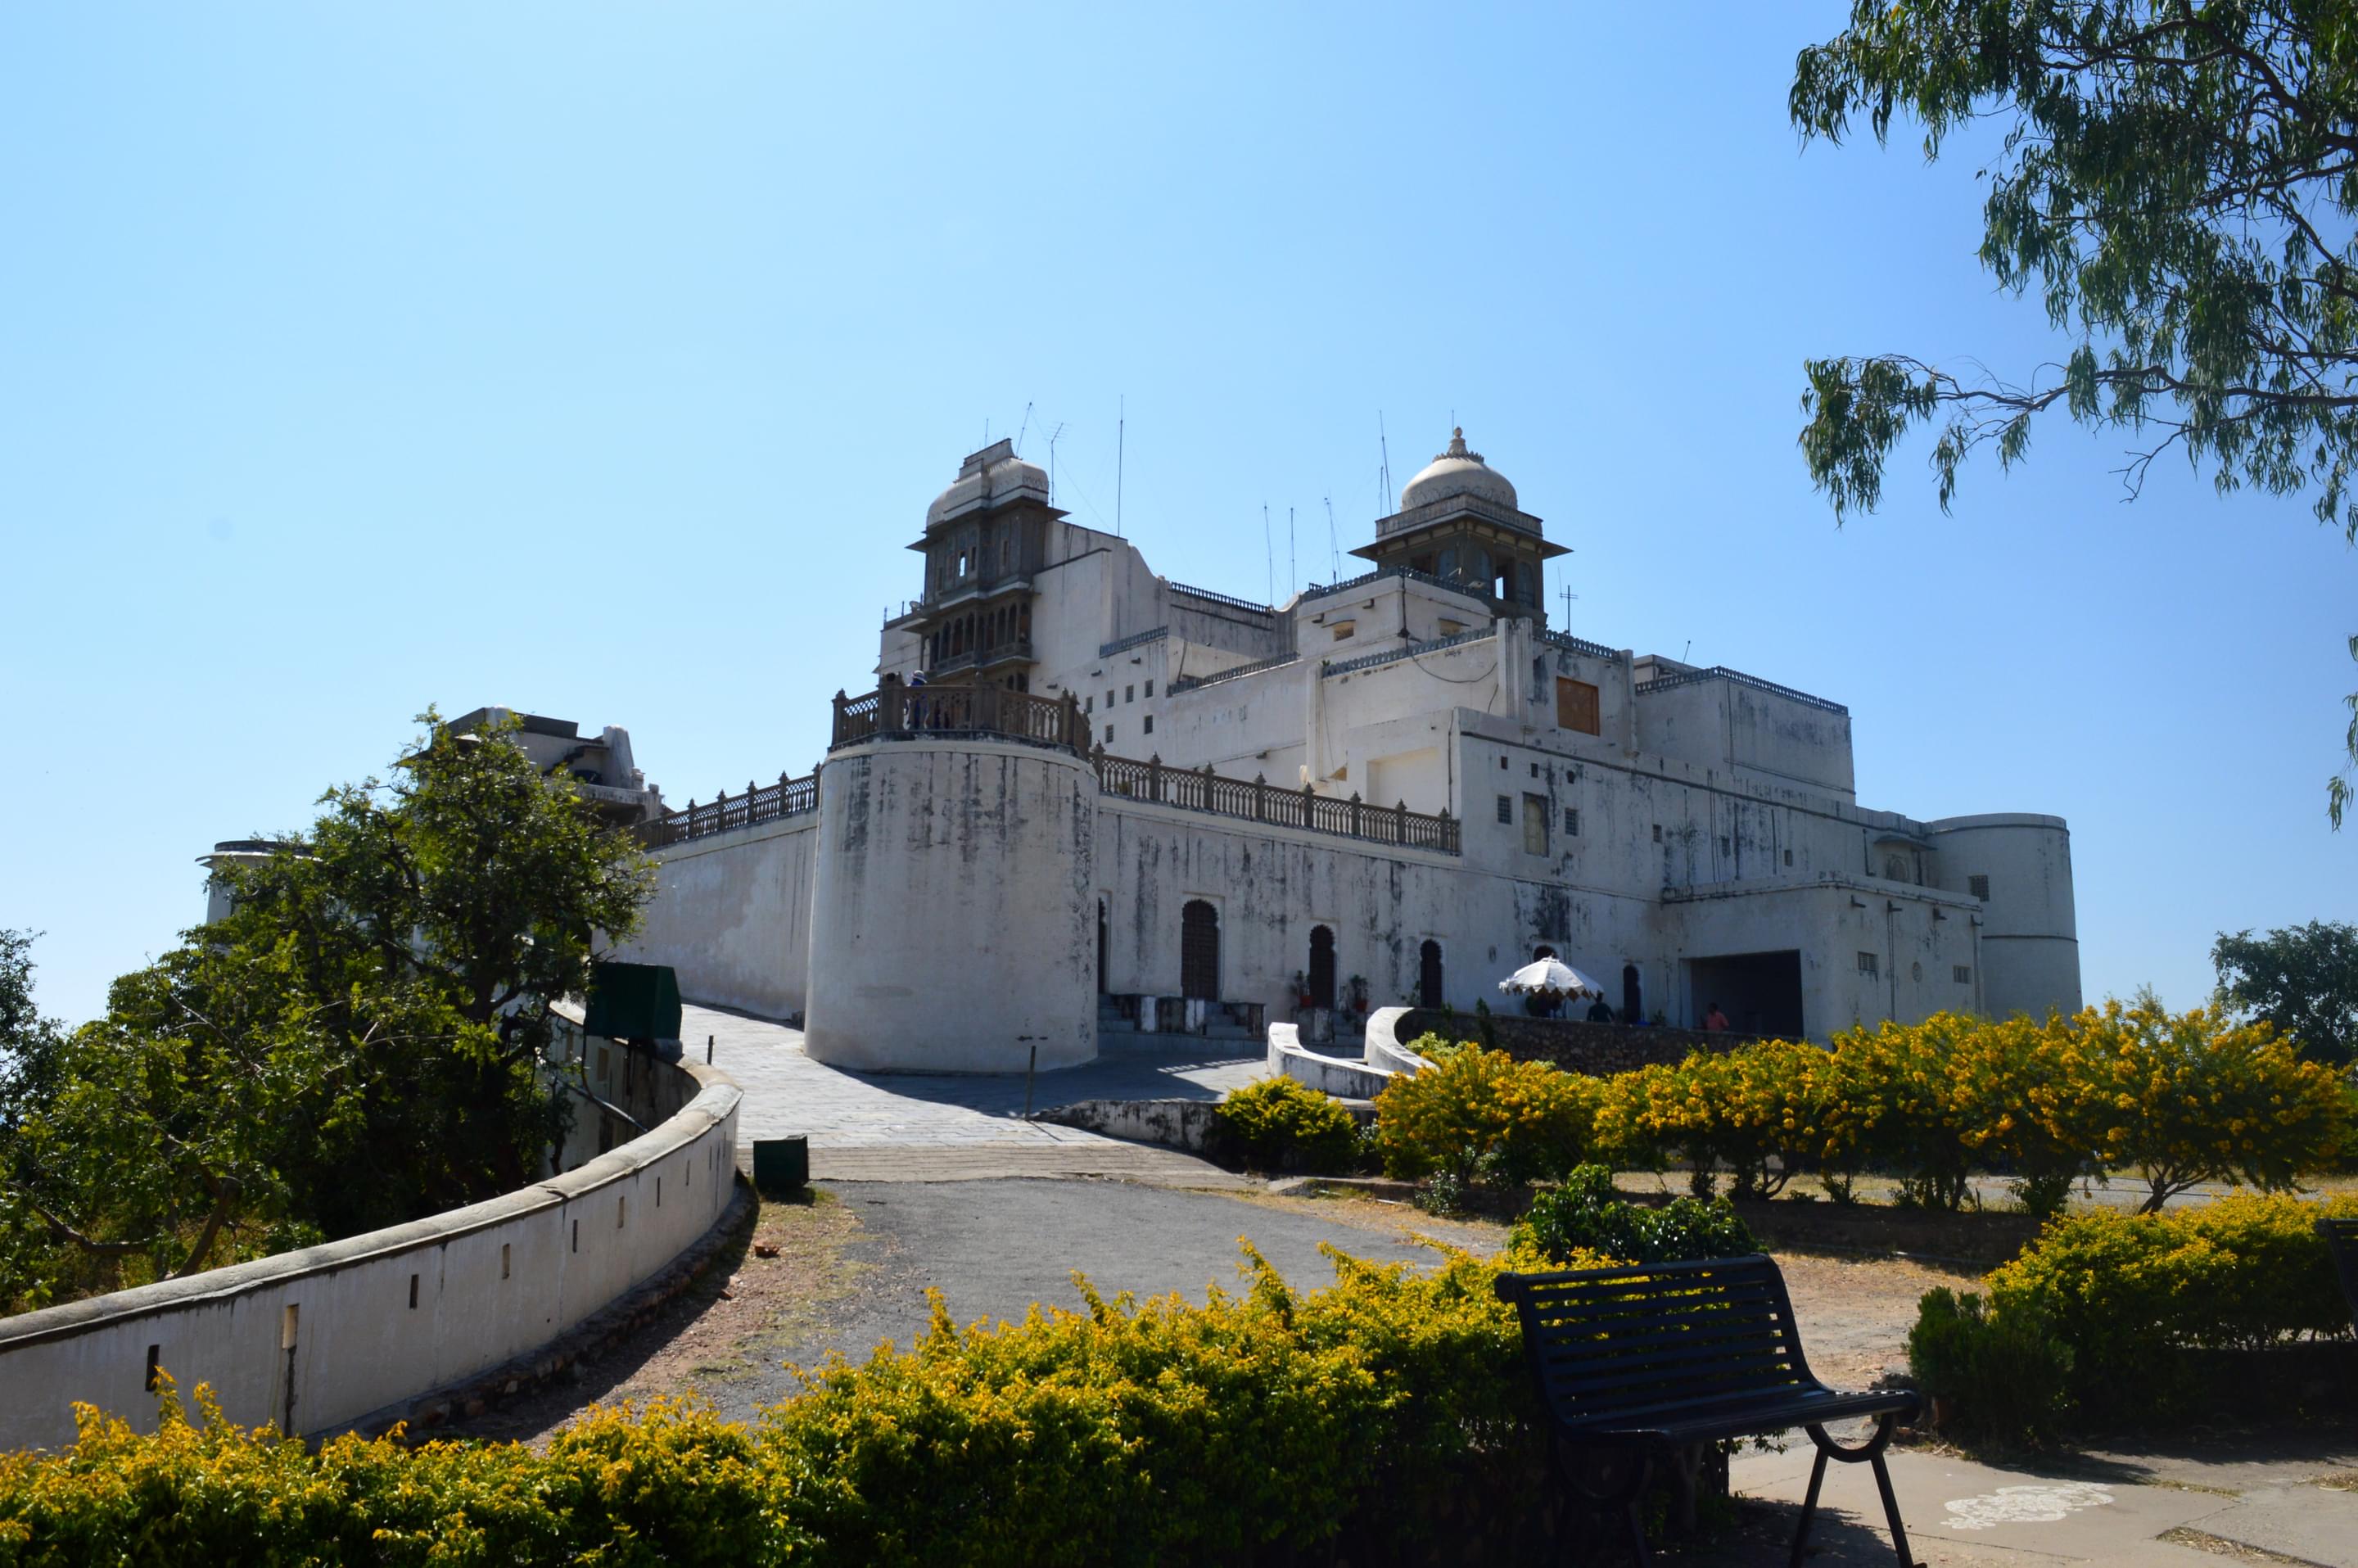 Sajjangarh Palace Overview